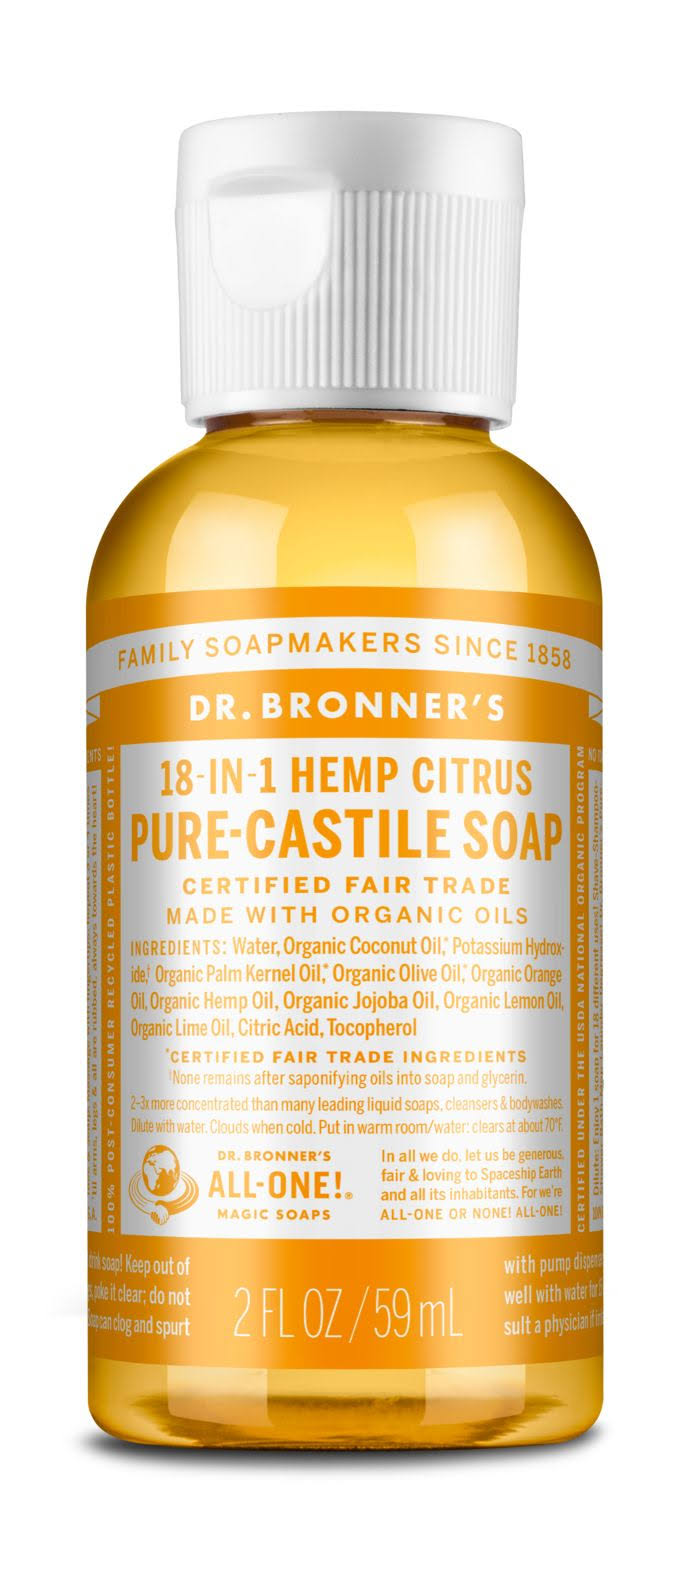 Dr. Bronner's Classic Pure-Castile Soap - Citrus